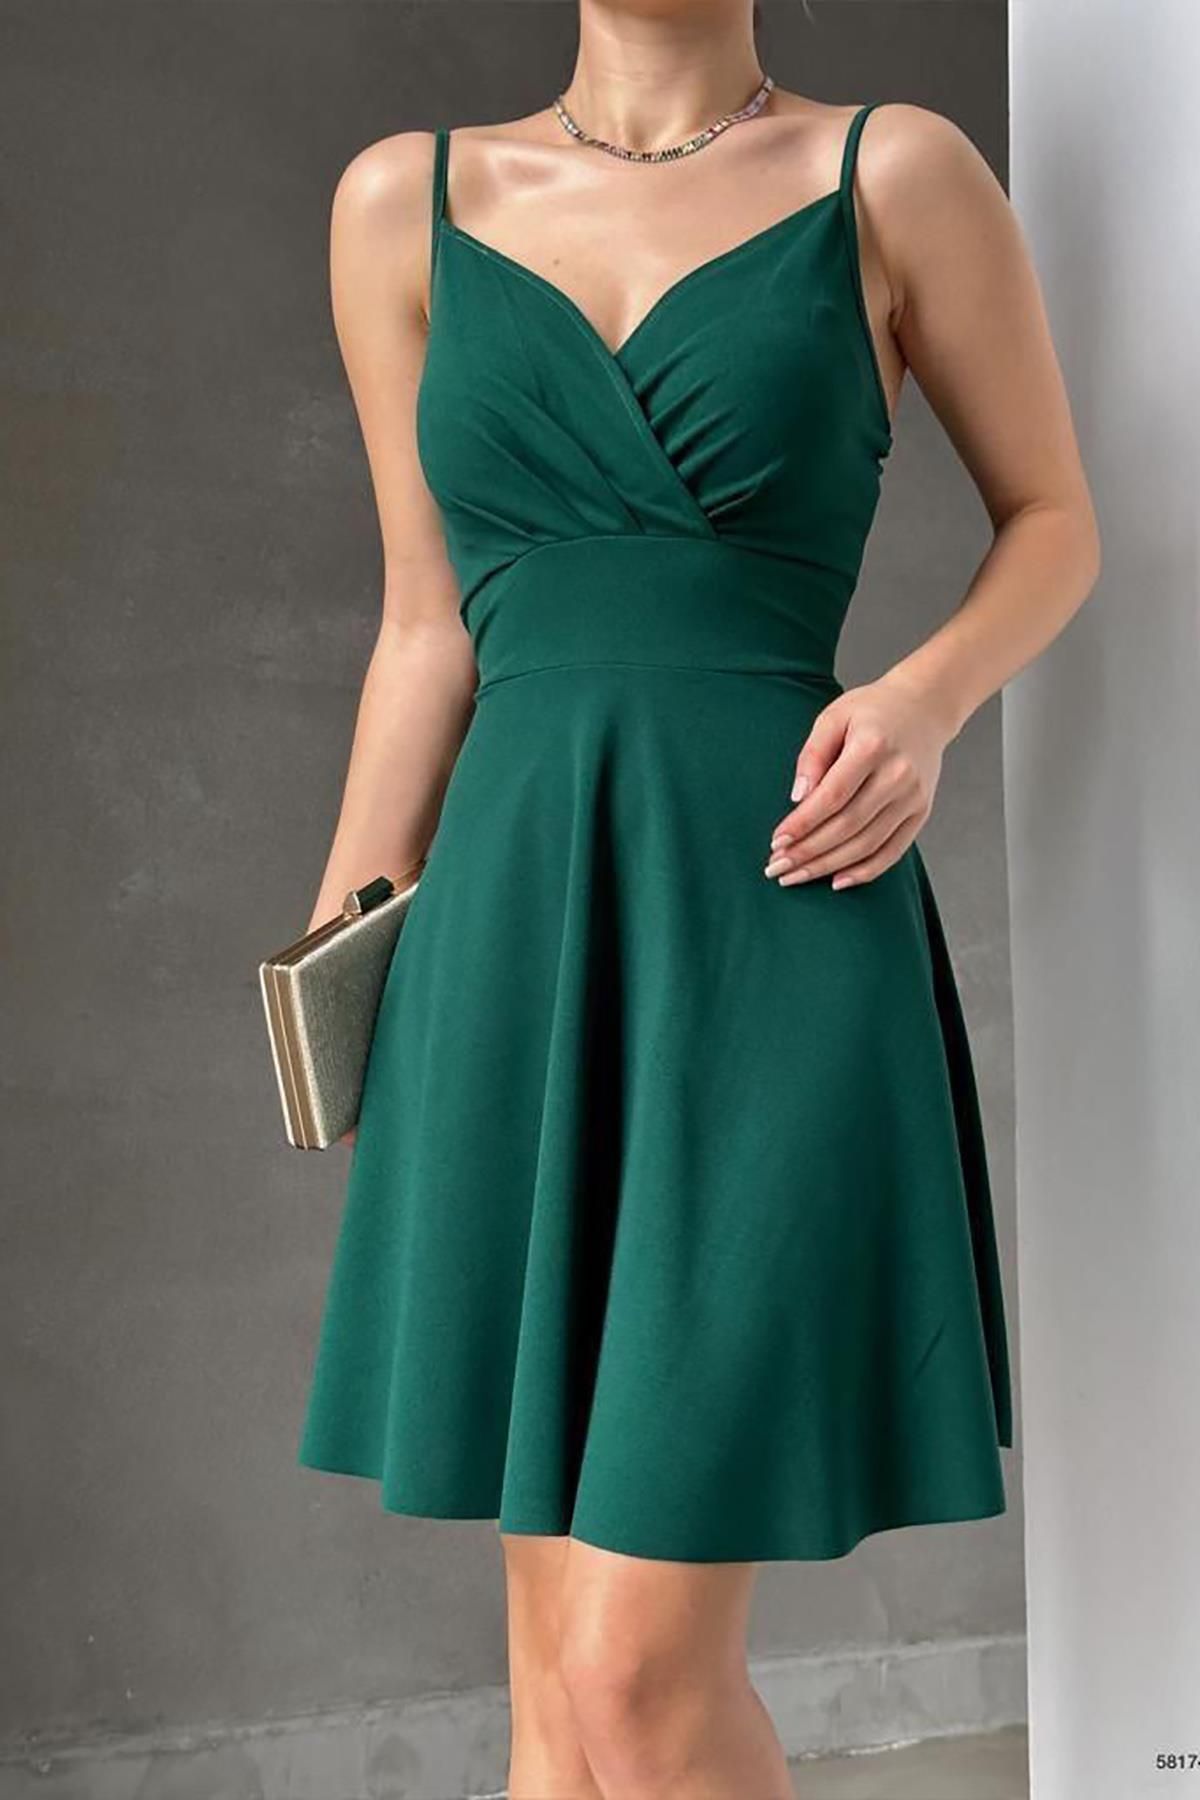 Deafox Krep Kumaş Yeşil Ince Askılı Kloş Elbise